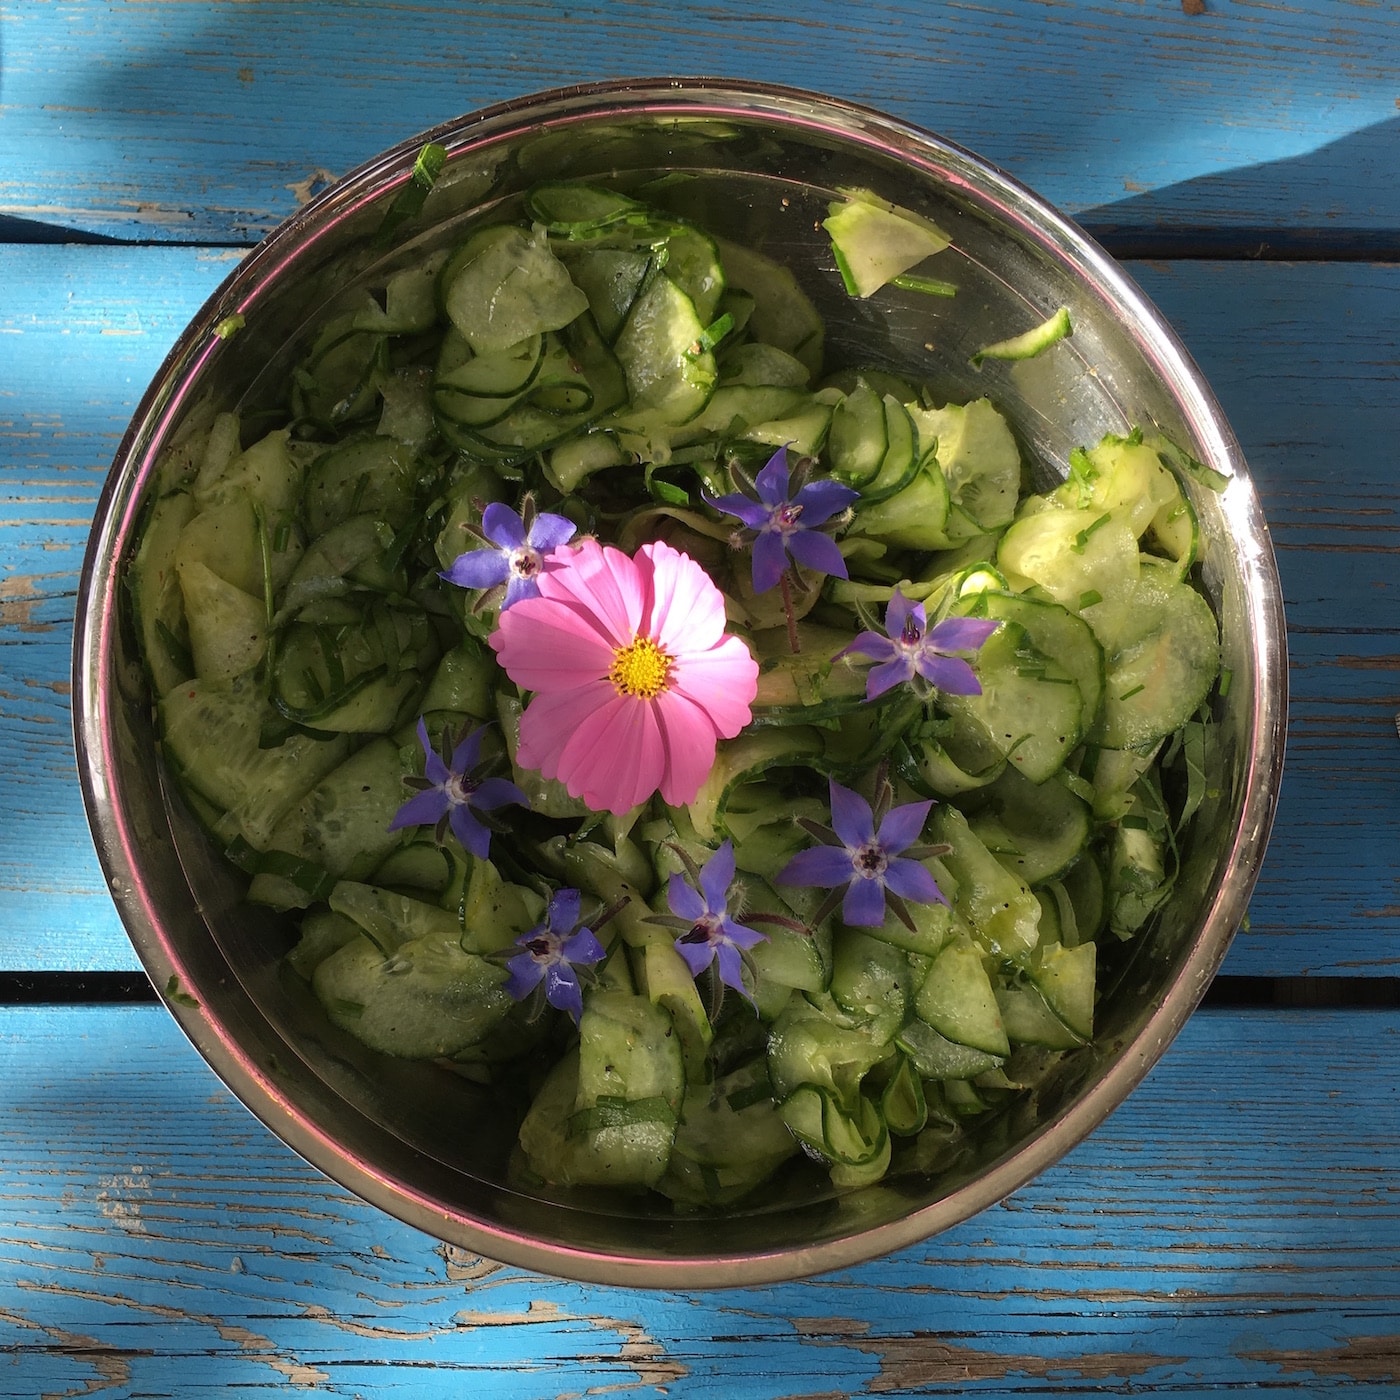 Gurkensalat mit Borretschblüten in einer Metallschüssel auf dem alten blauen Tisch im Erfurter Garten.